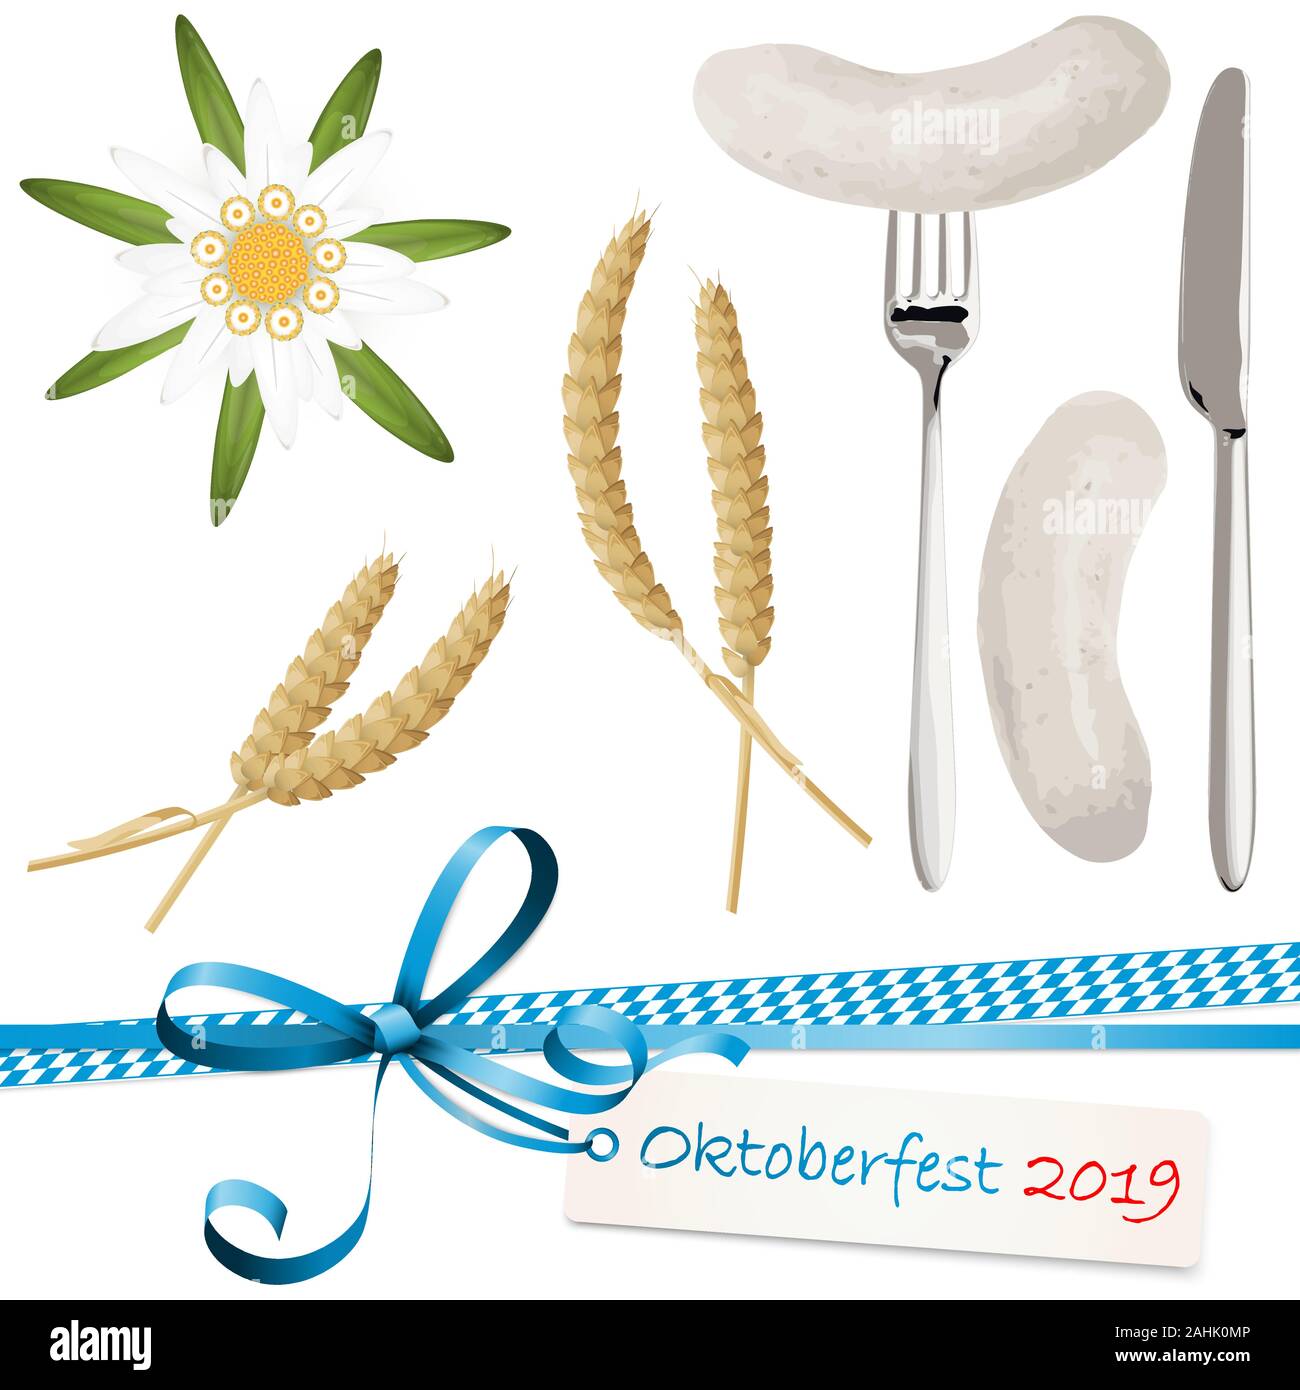 Raccolta di tipica illustrata Oktoberfest oggetti, Edelweiss flower, frumento, salsiccia bianca con il cucchiaio e il coltello e prua a nastro con etichetta da appendere per essere Illustrazione Vettoriale